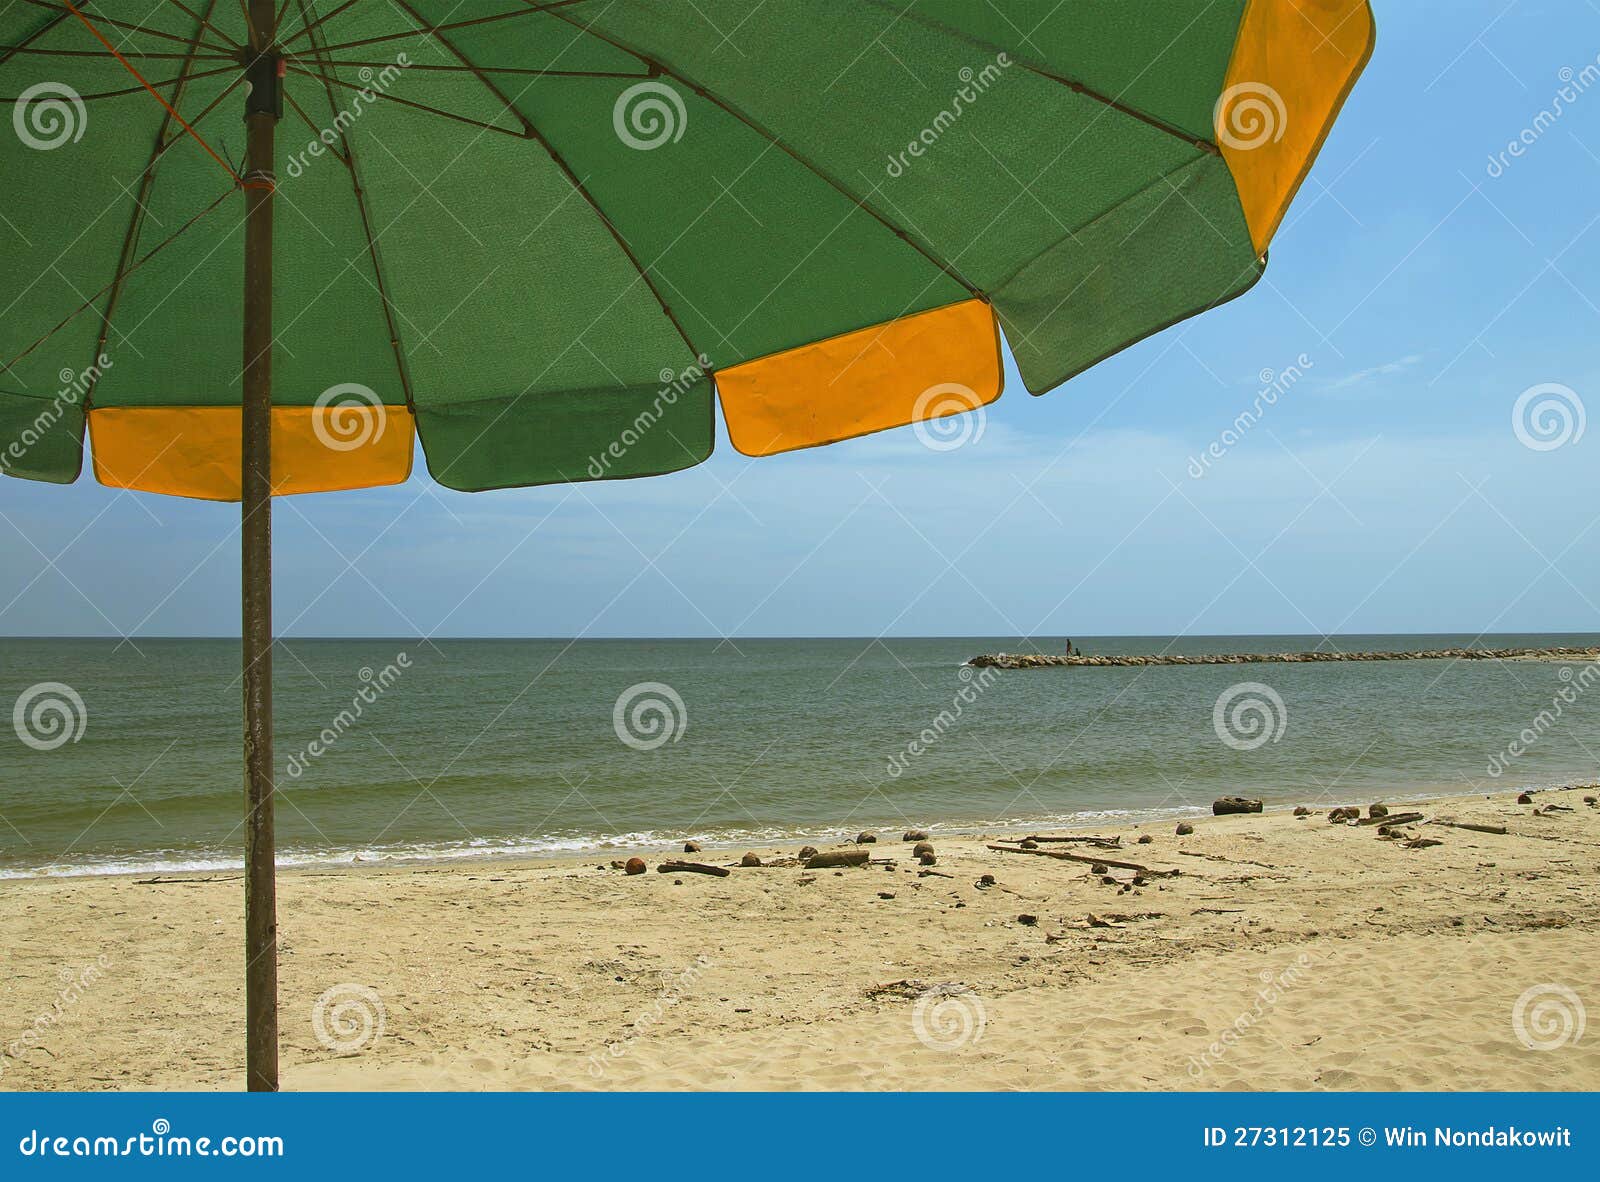 Beach umbrella stock image. Image of umbrella, relax - 27312125